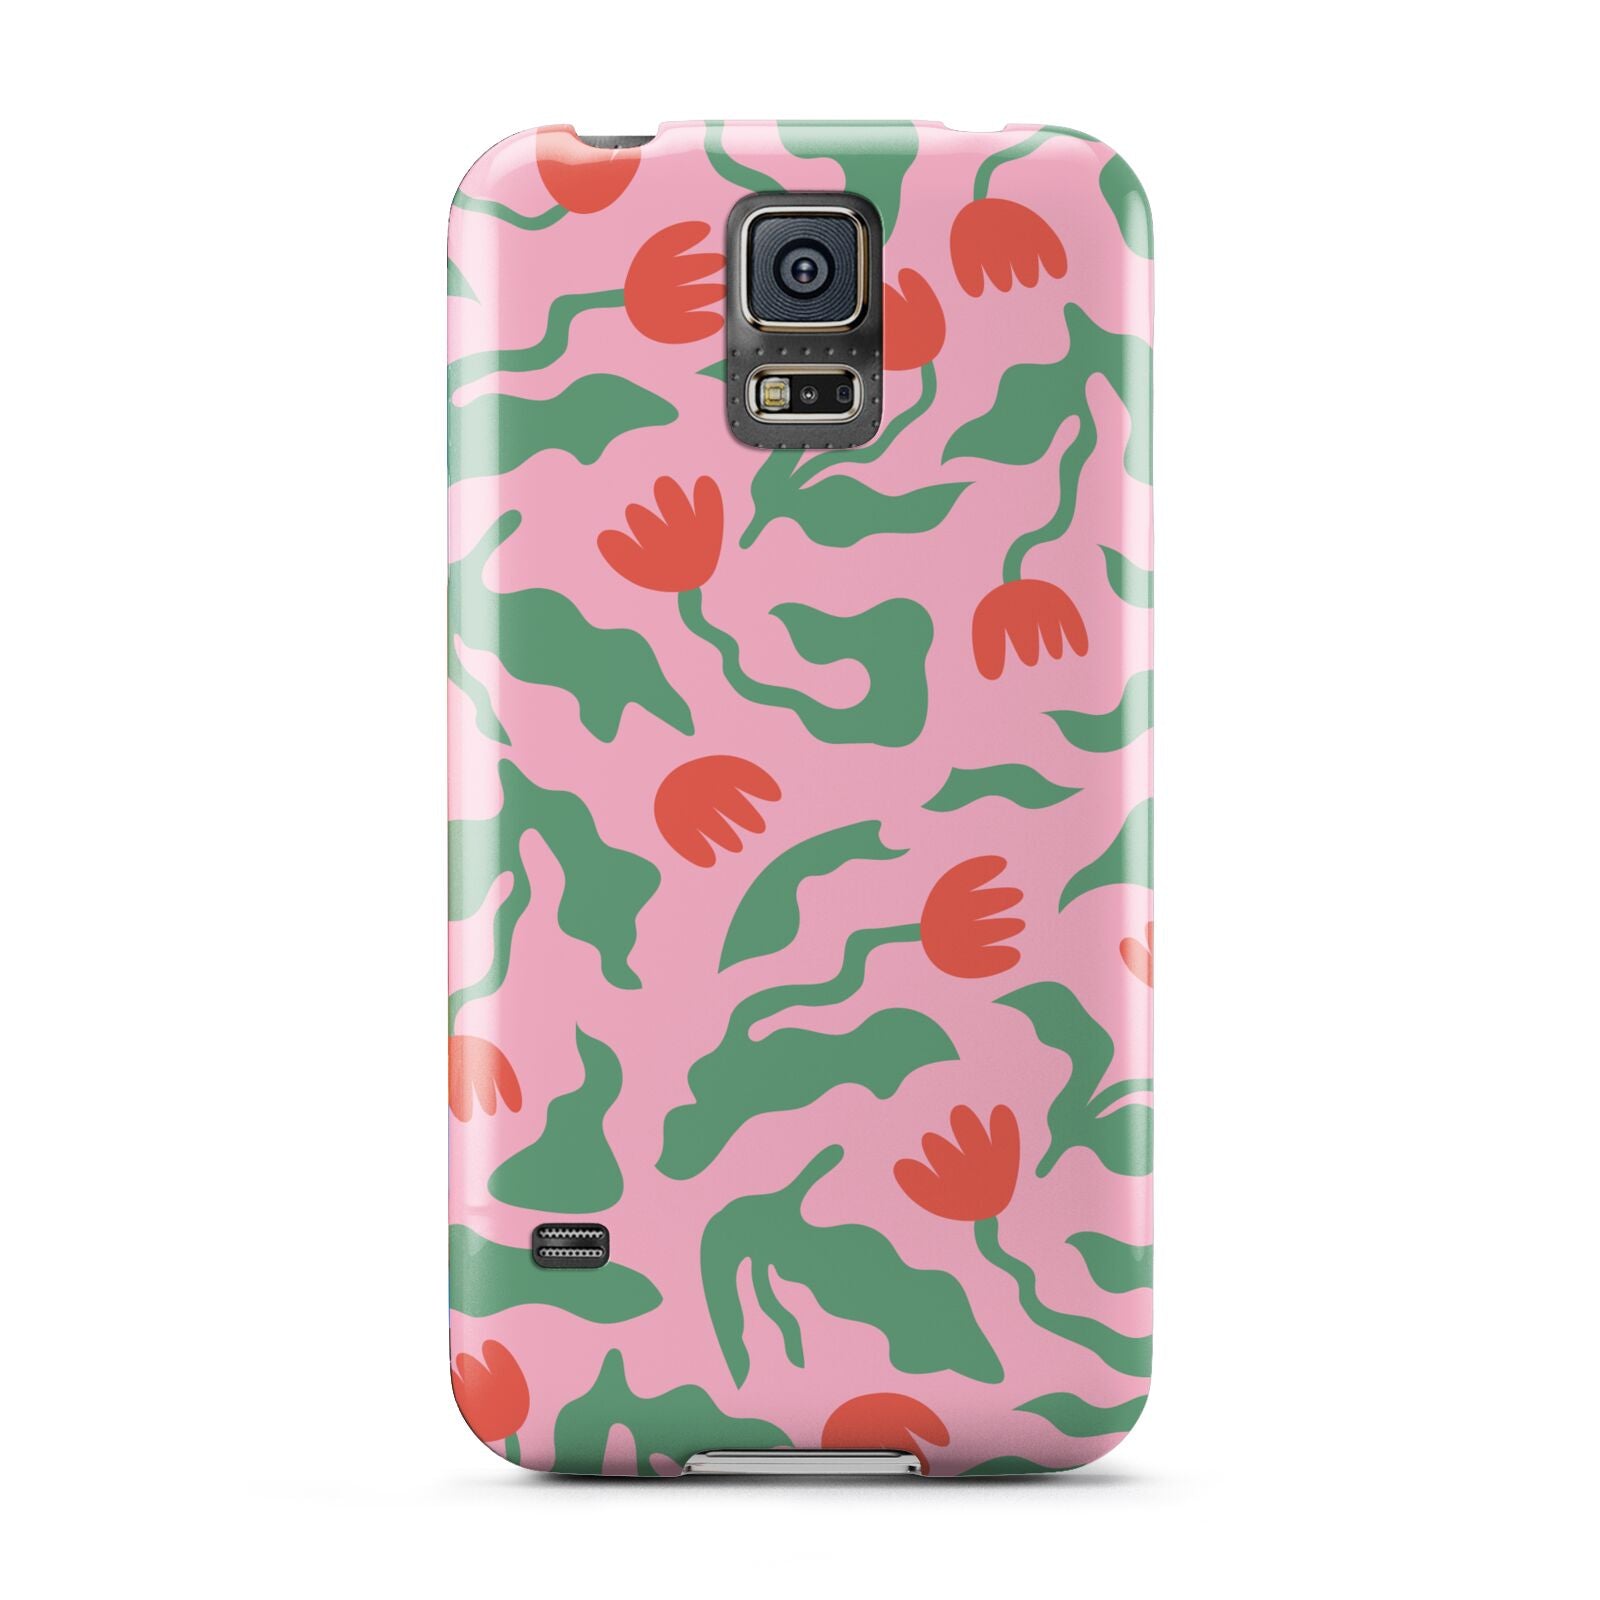 Simple Floral Samsung Galaxy S5 Case